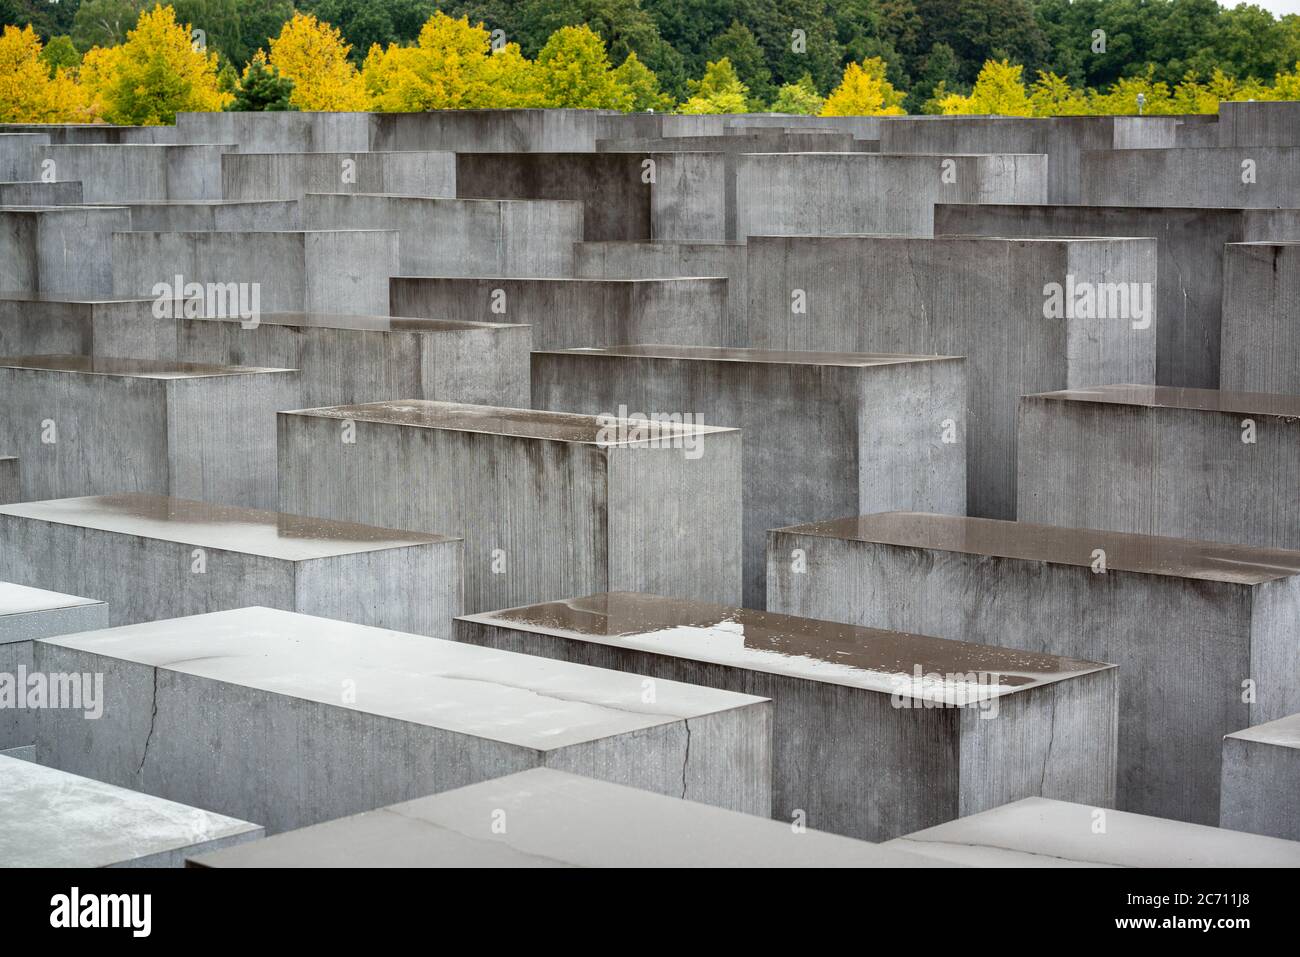 Berlino, Germania - 18 settembre 2013: il memoriale della assassinato ebrei d'Europa. Foto Stock